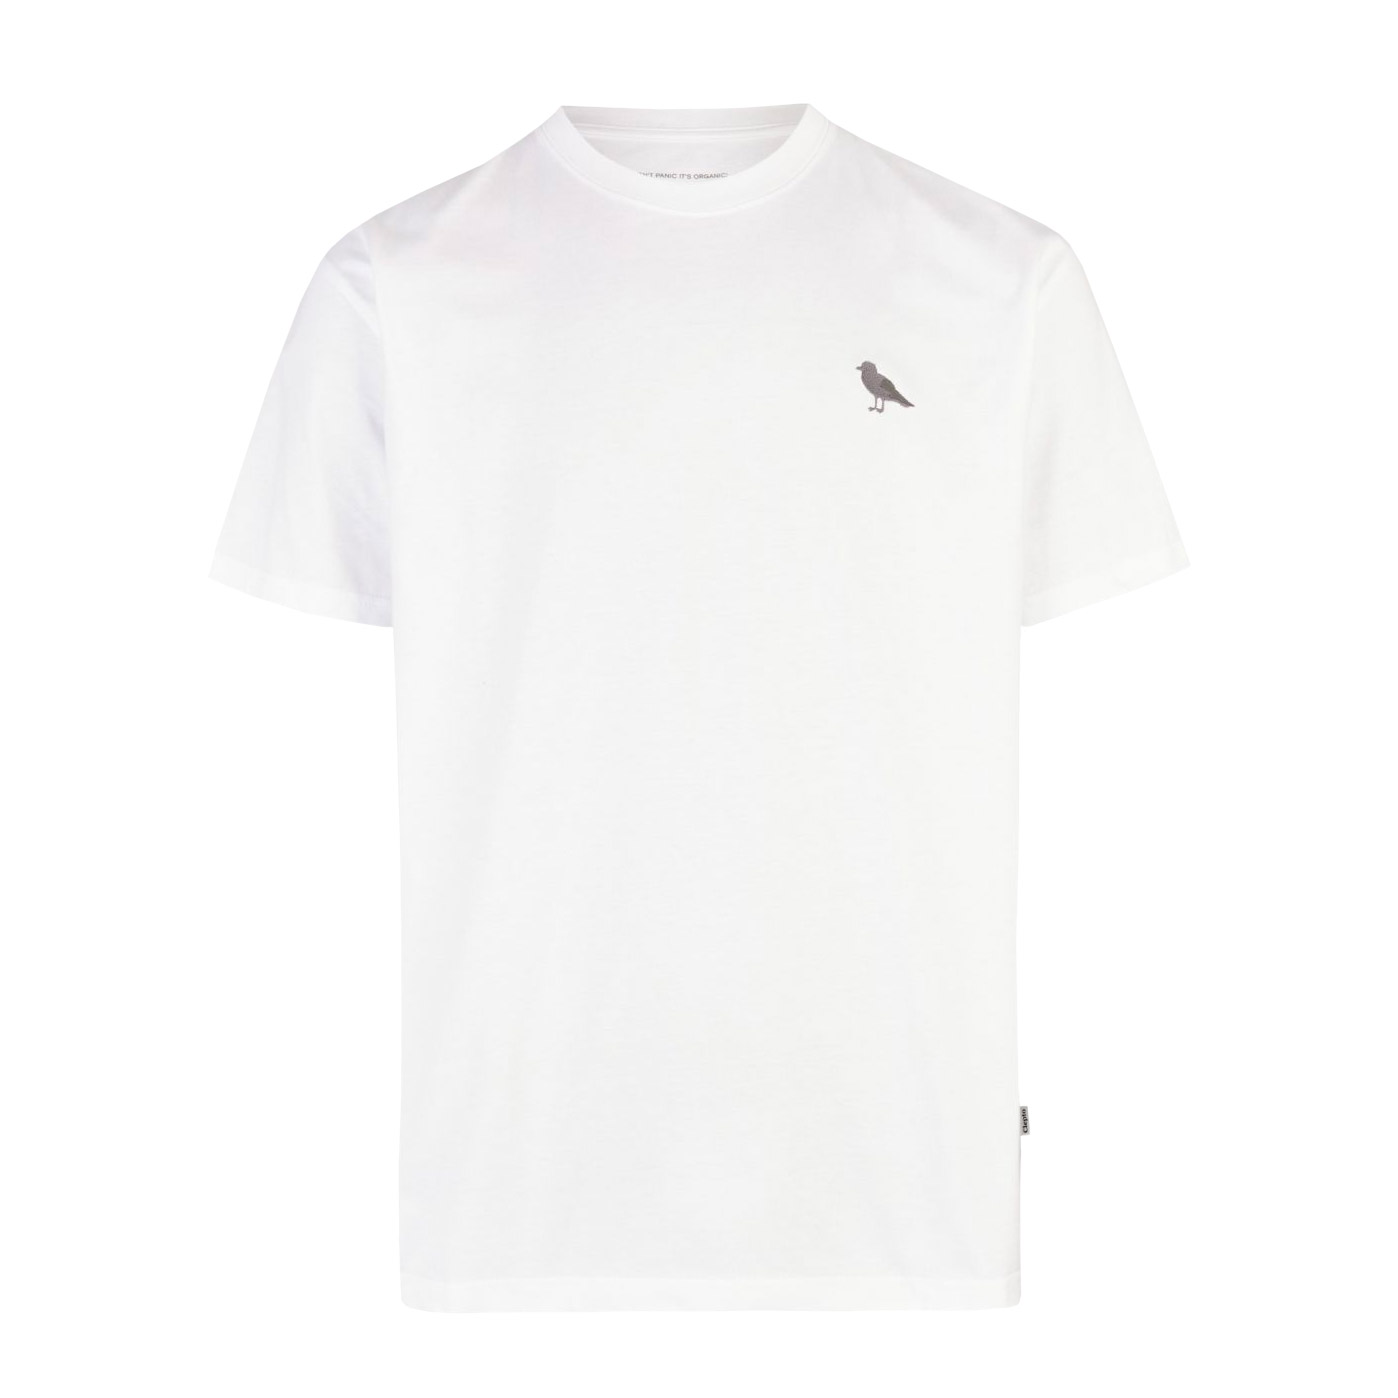 Cleptomanicx T-Shirt Embroidery Gull Mono (white)